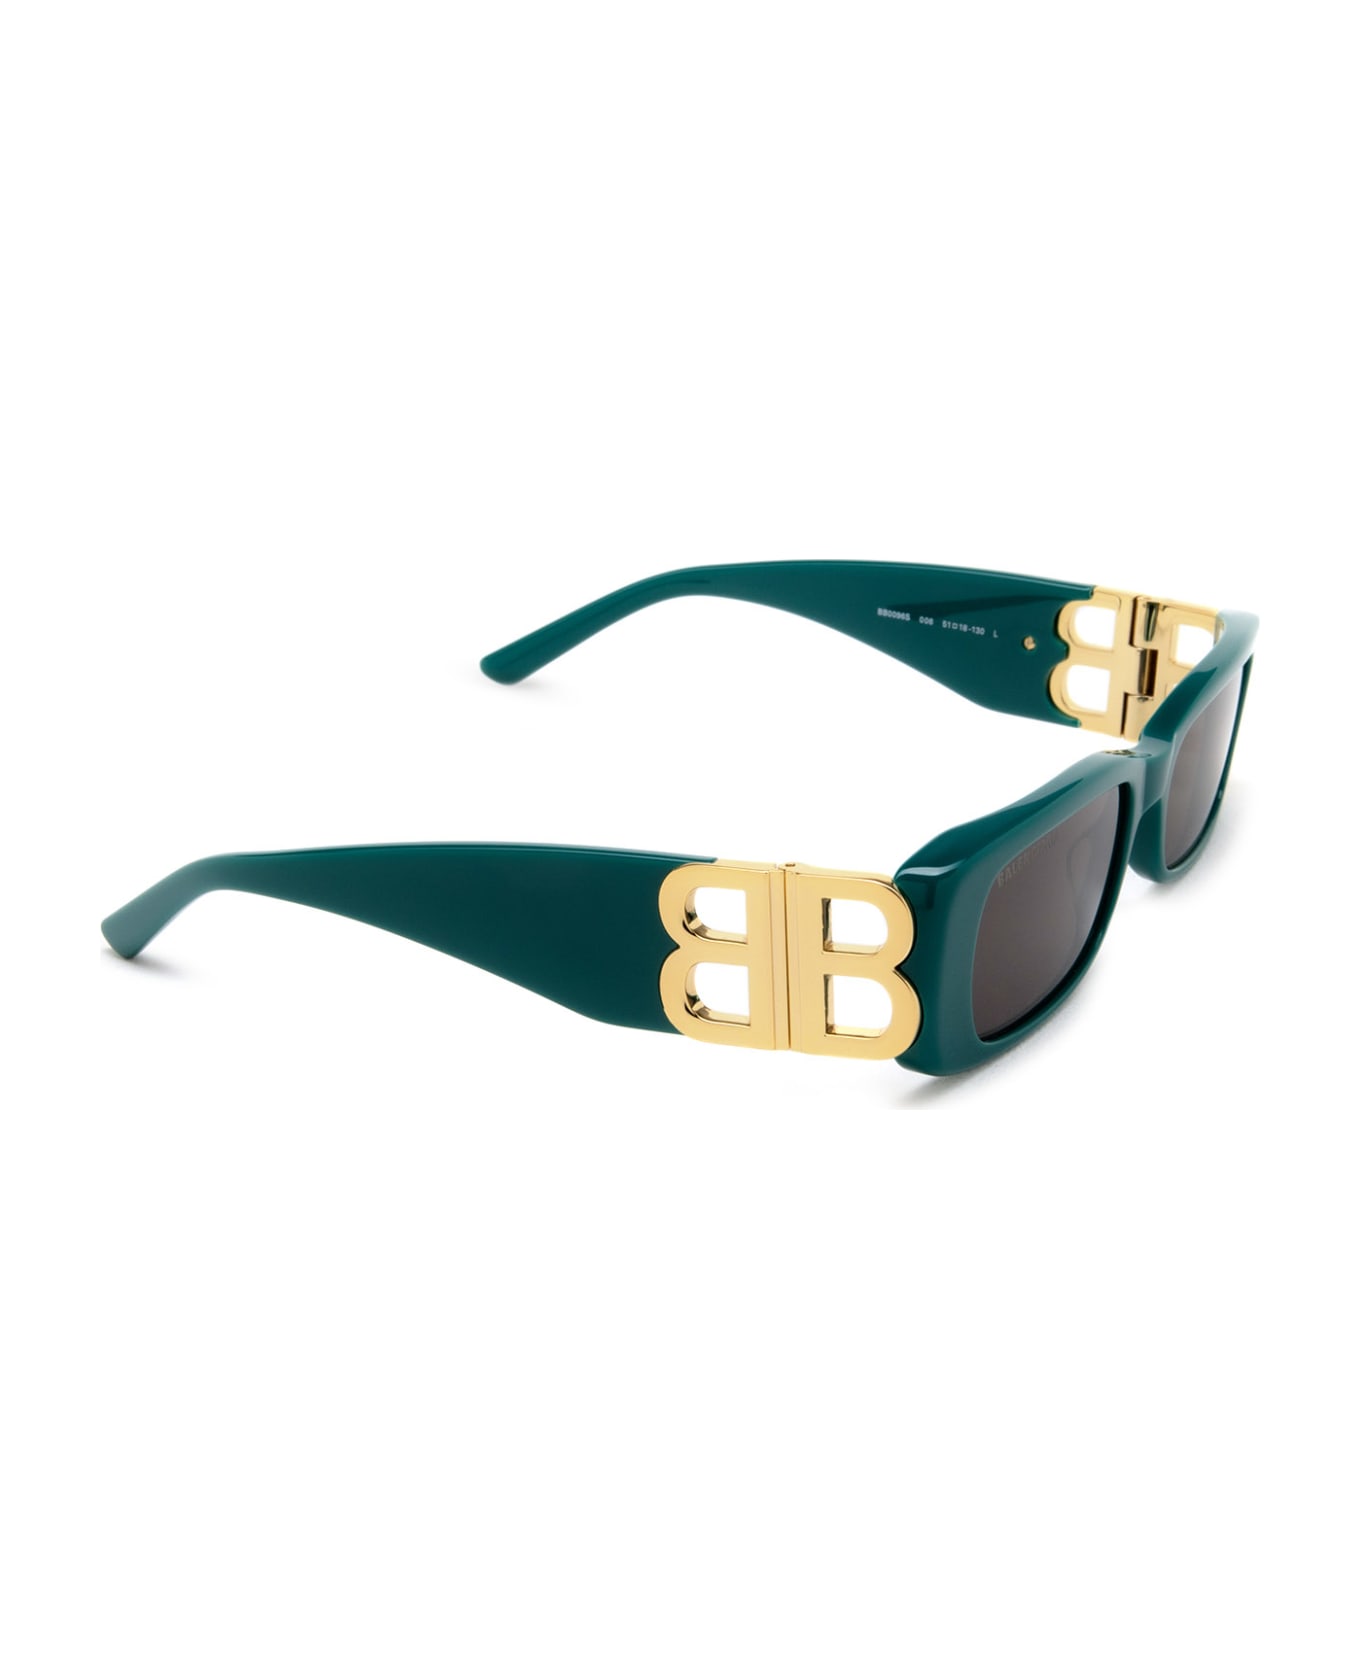 Balenciaga Eyewear Bb0096s Sunglasses - 006 GREEN GOLD GREY